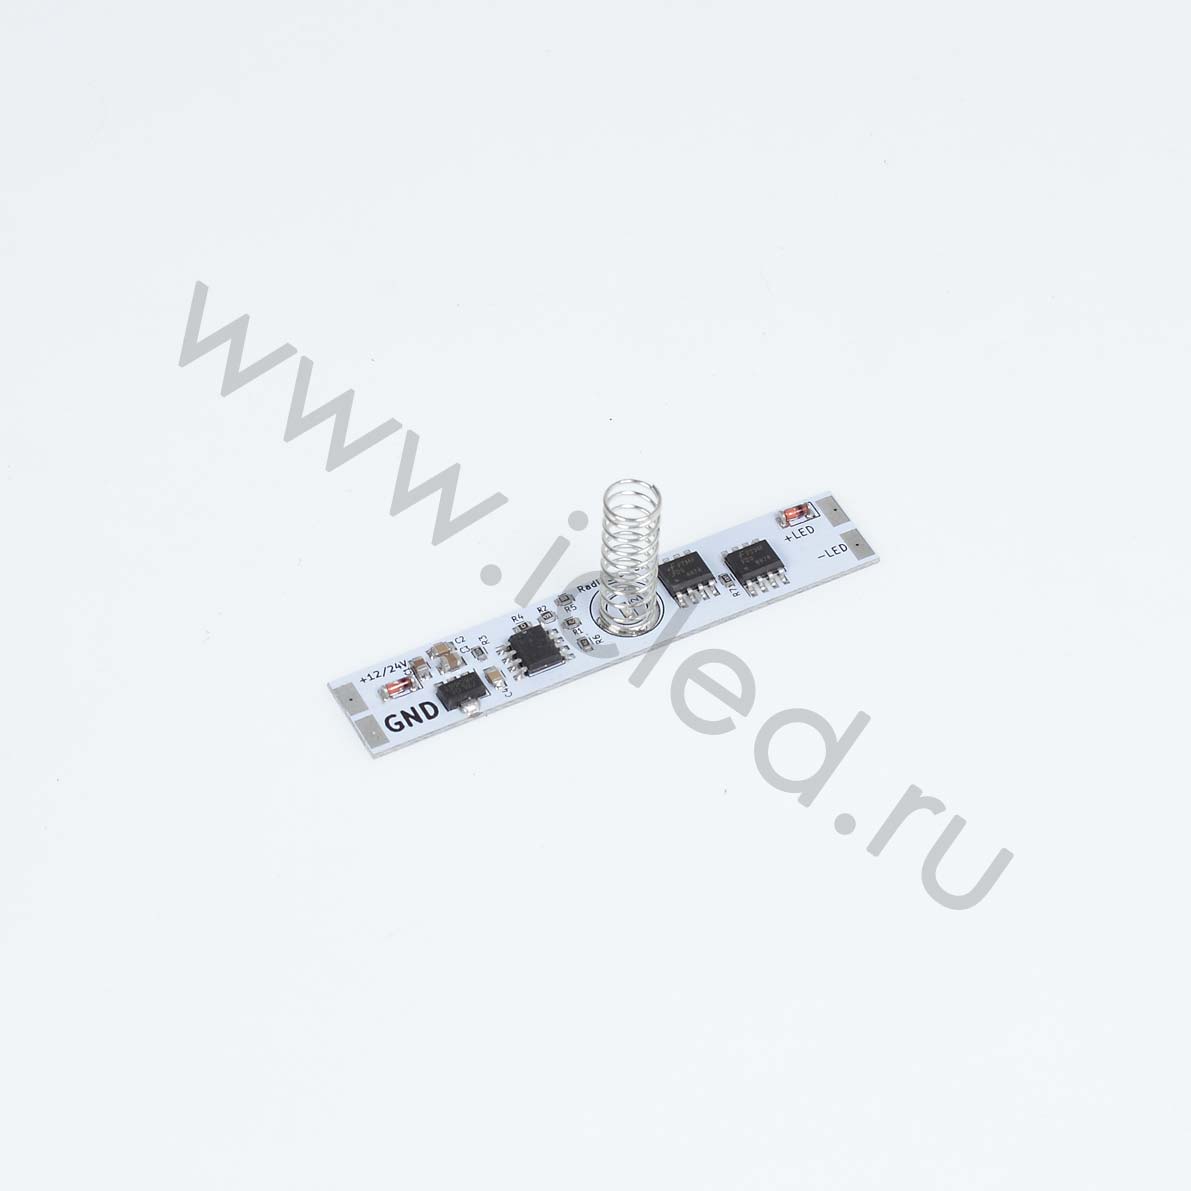 Алюминиевый профиль Dimmer touch M297-20  10 A пружина 20 мм ступенчатая регулировка, с памятью  для профиля